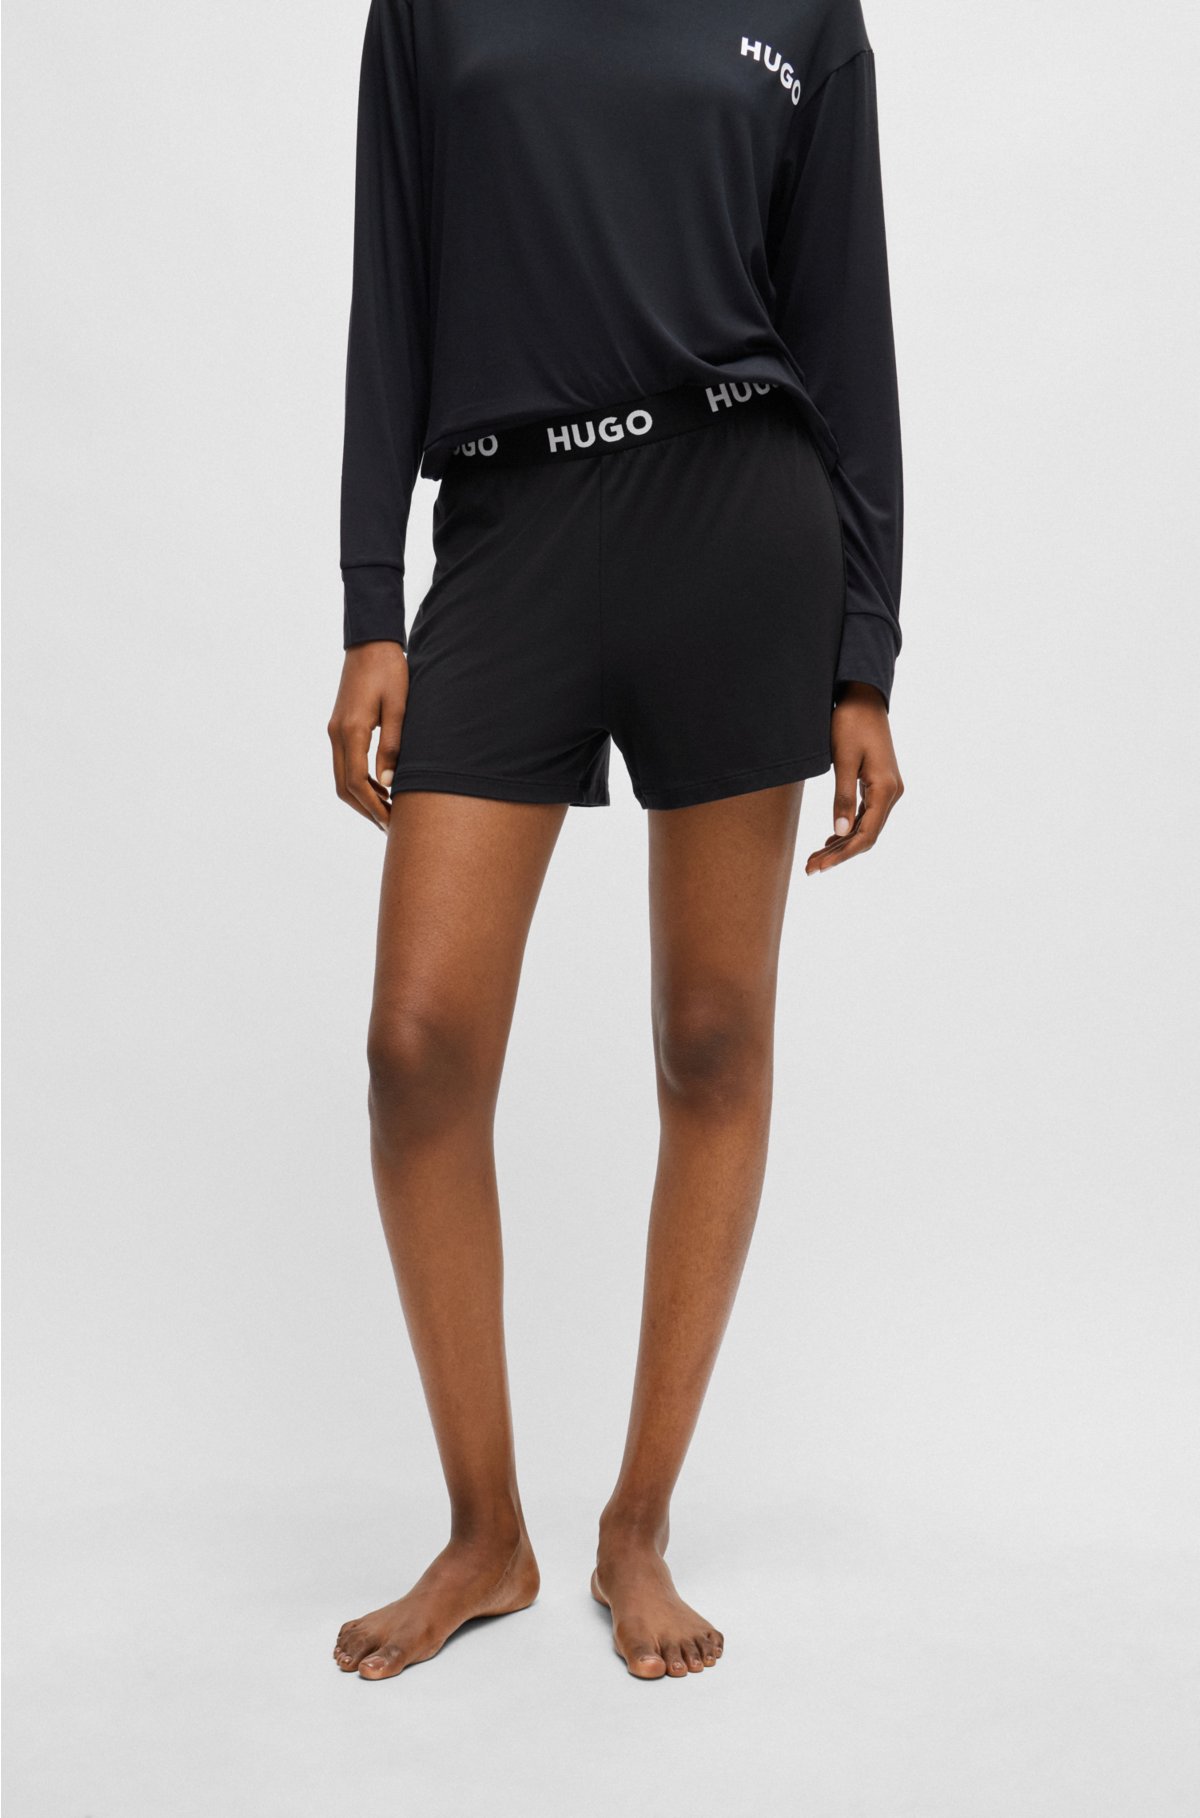 waistband logo - HUGO shorts pyjama Stretch-jersey with